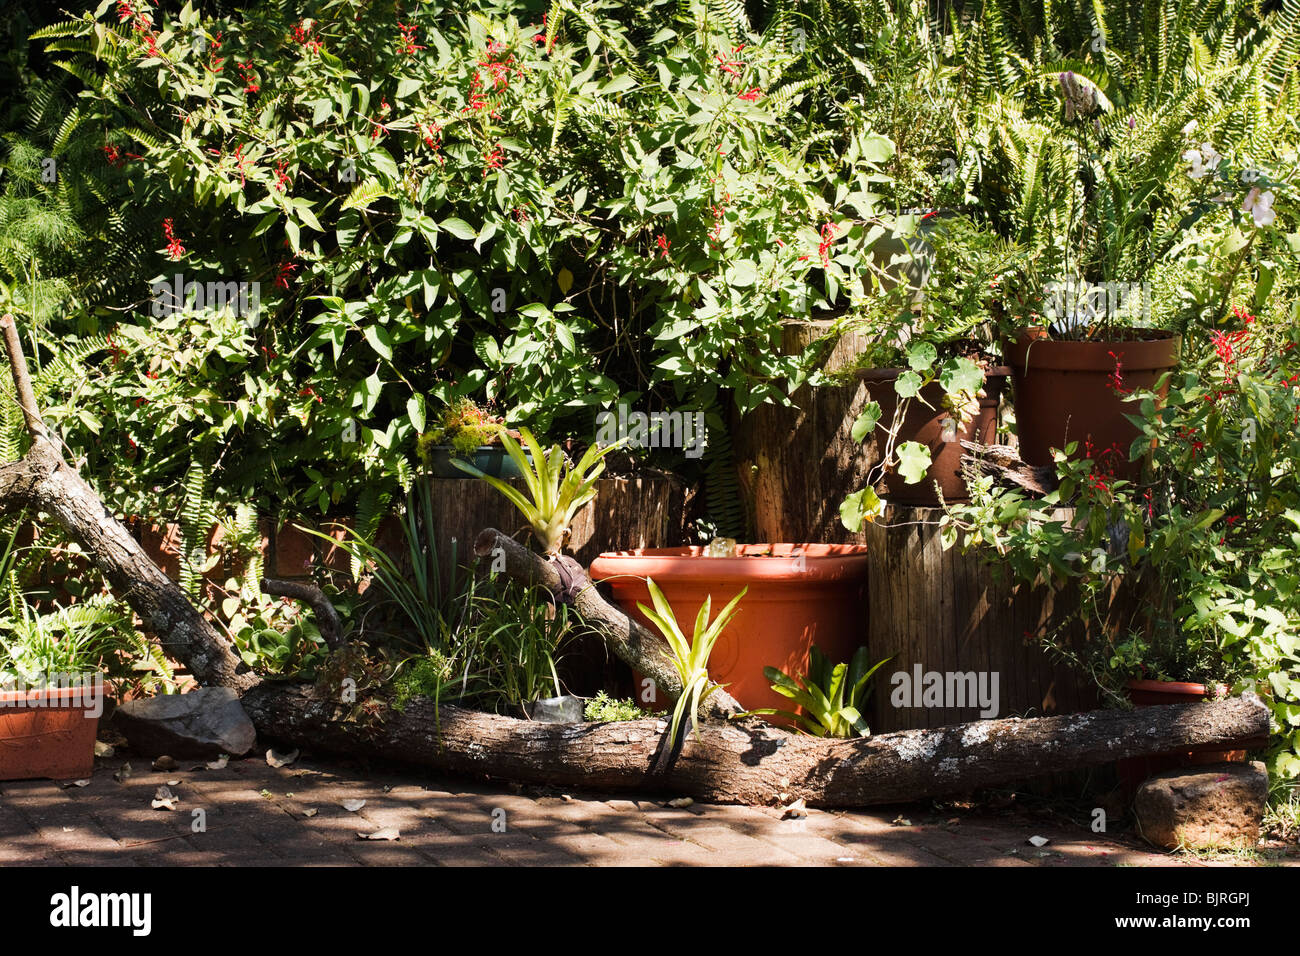 Topfpflanzen, Log, Felsen und Wasser-Funktion machen einen Container Garten in einer Ecke eine gepflasterte Terrasse. Stockfoto